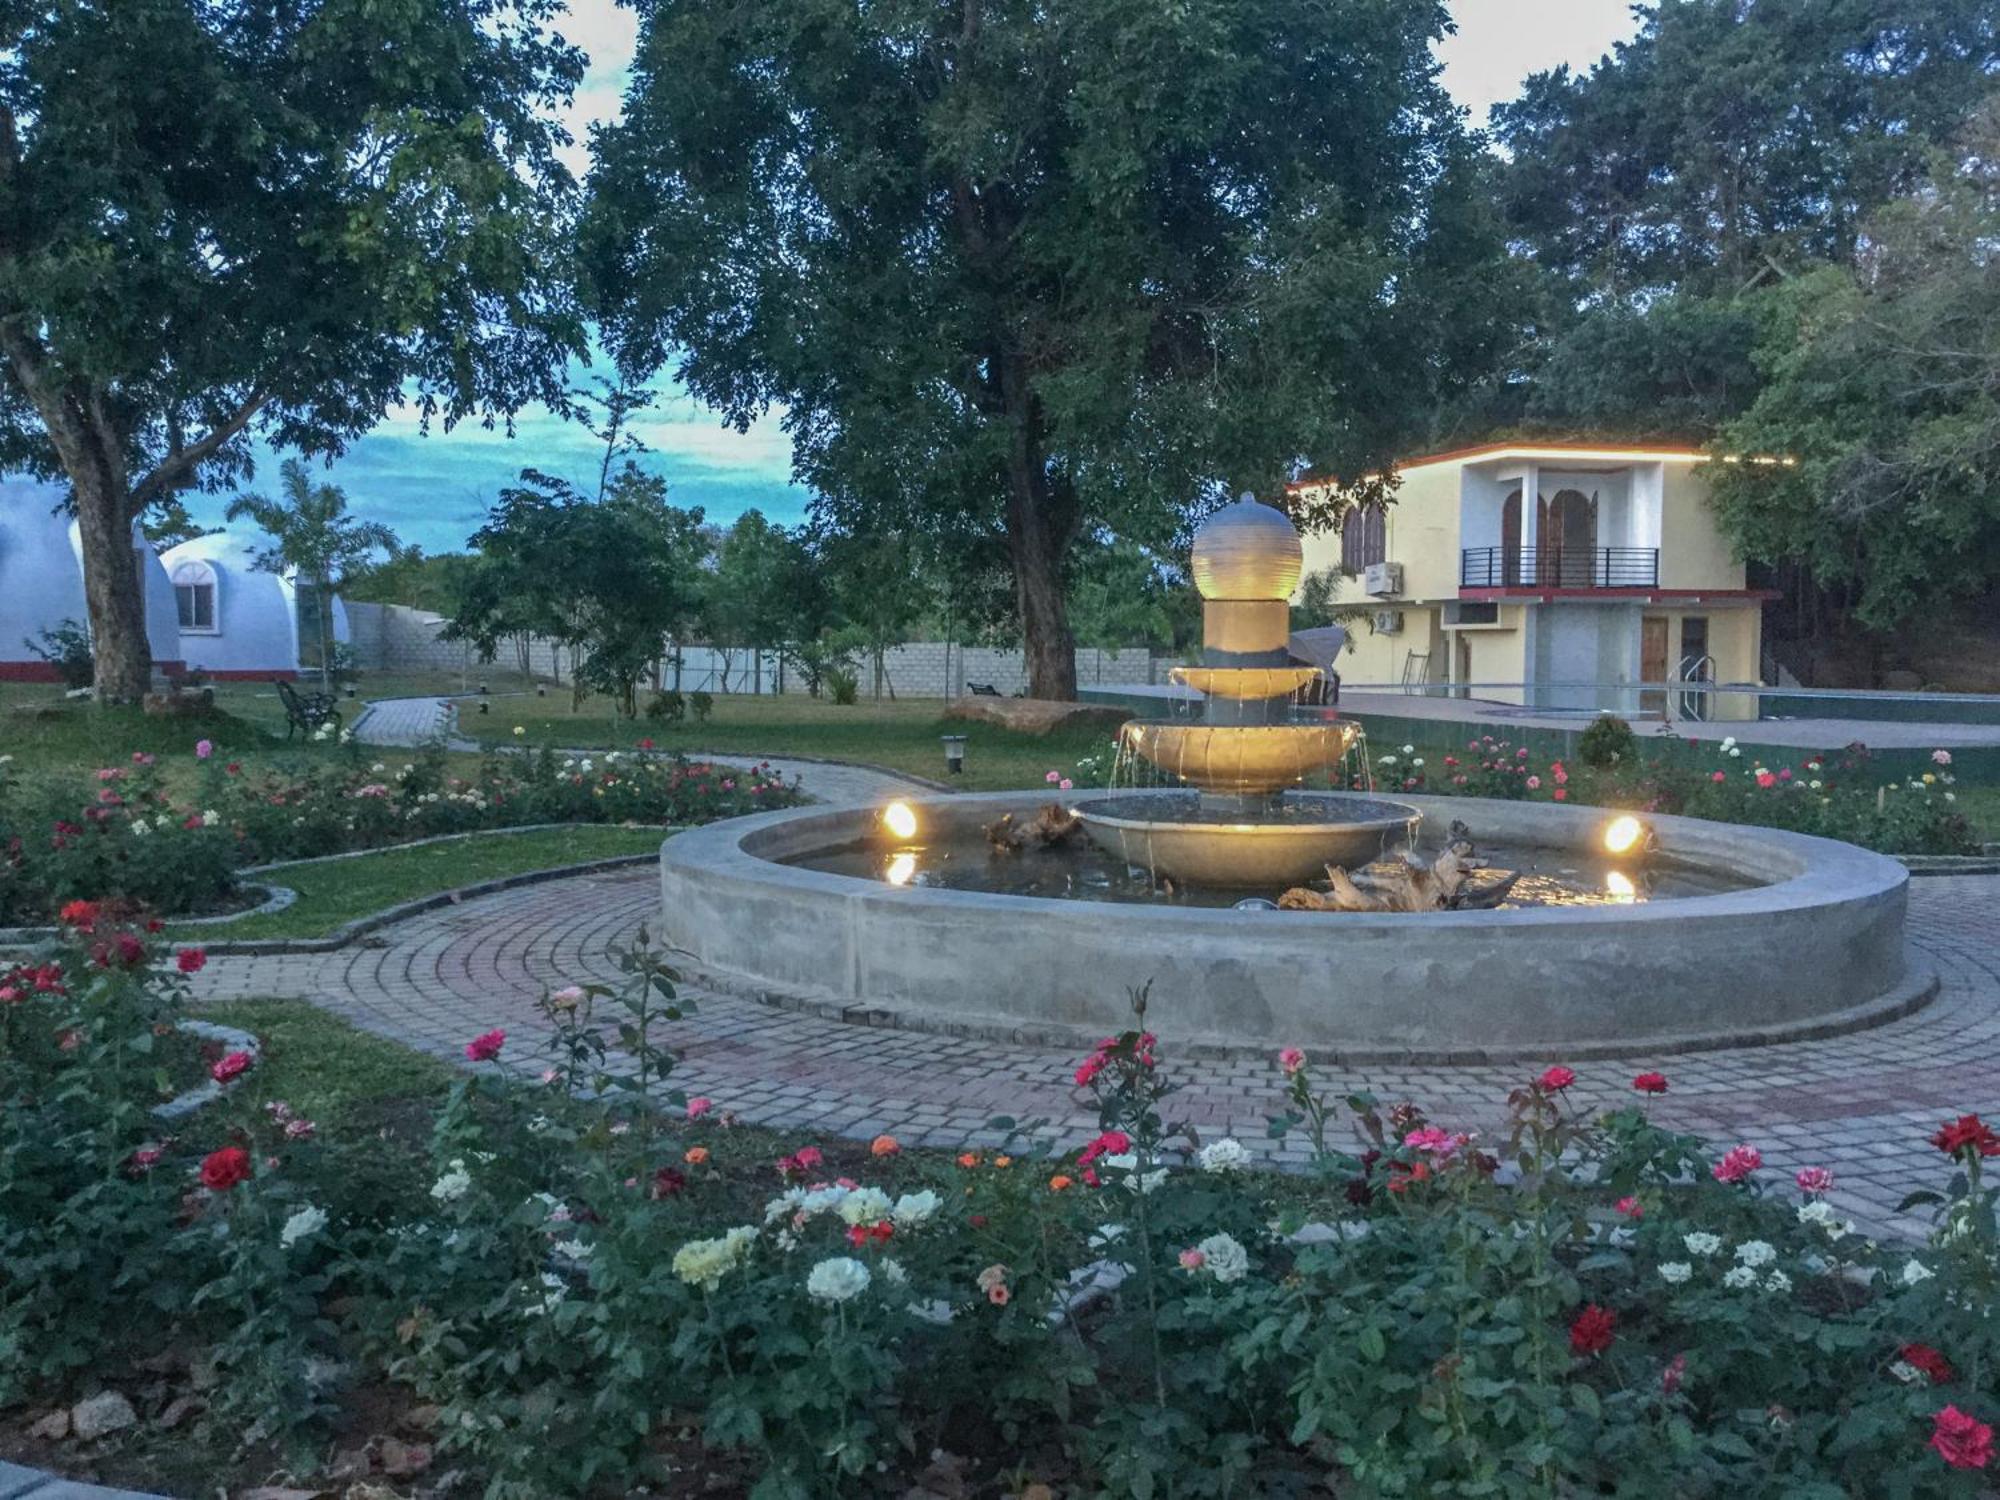 The Lion Kingdom Sigiriya Hotel Kültér fotó